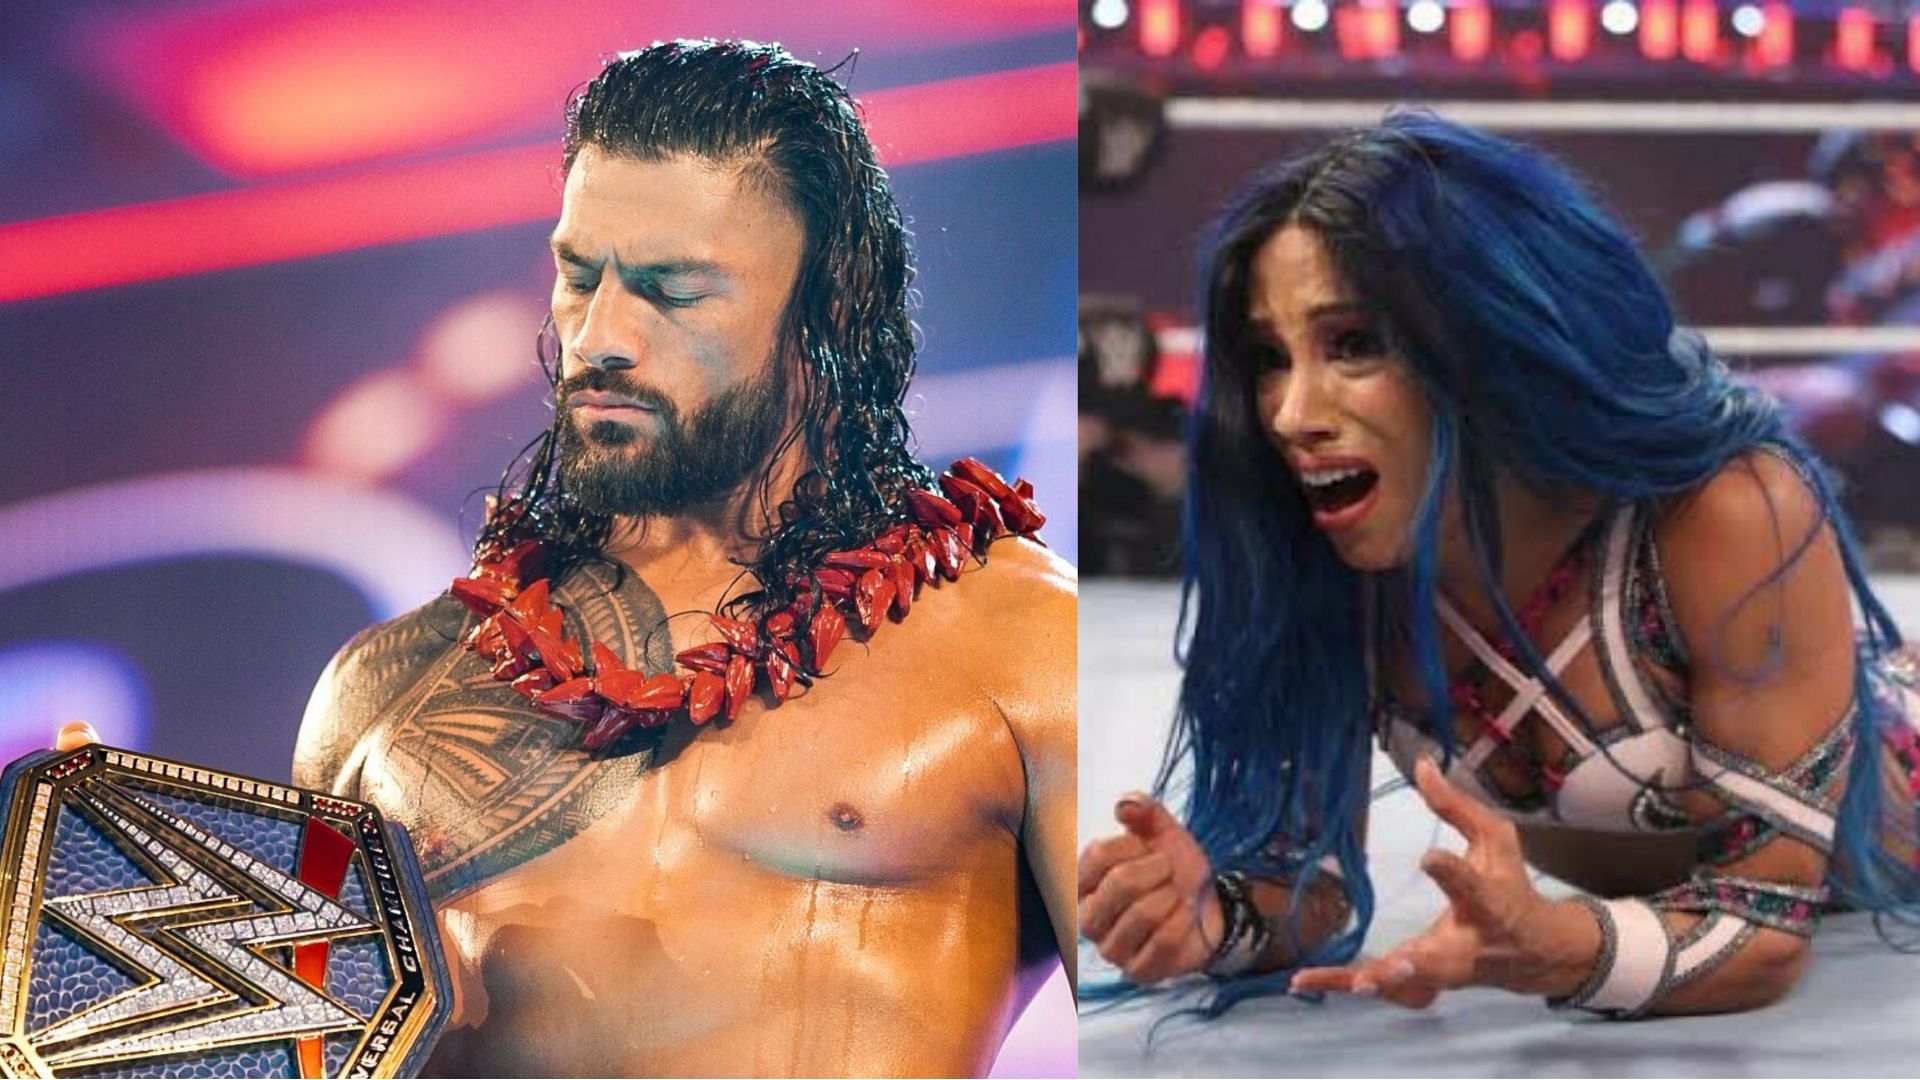 Roman Reigns and Sasha Banks were among the rumors